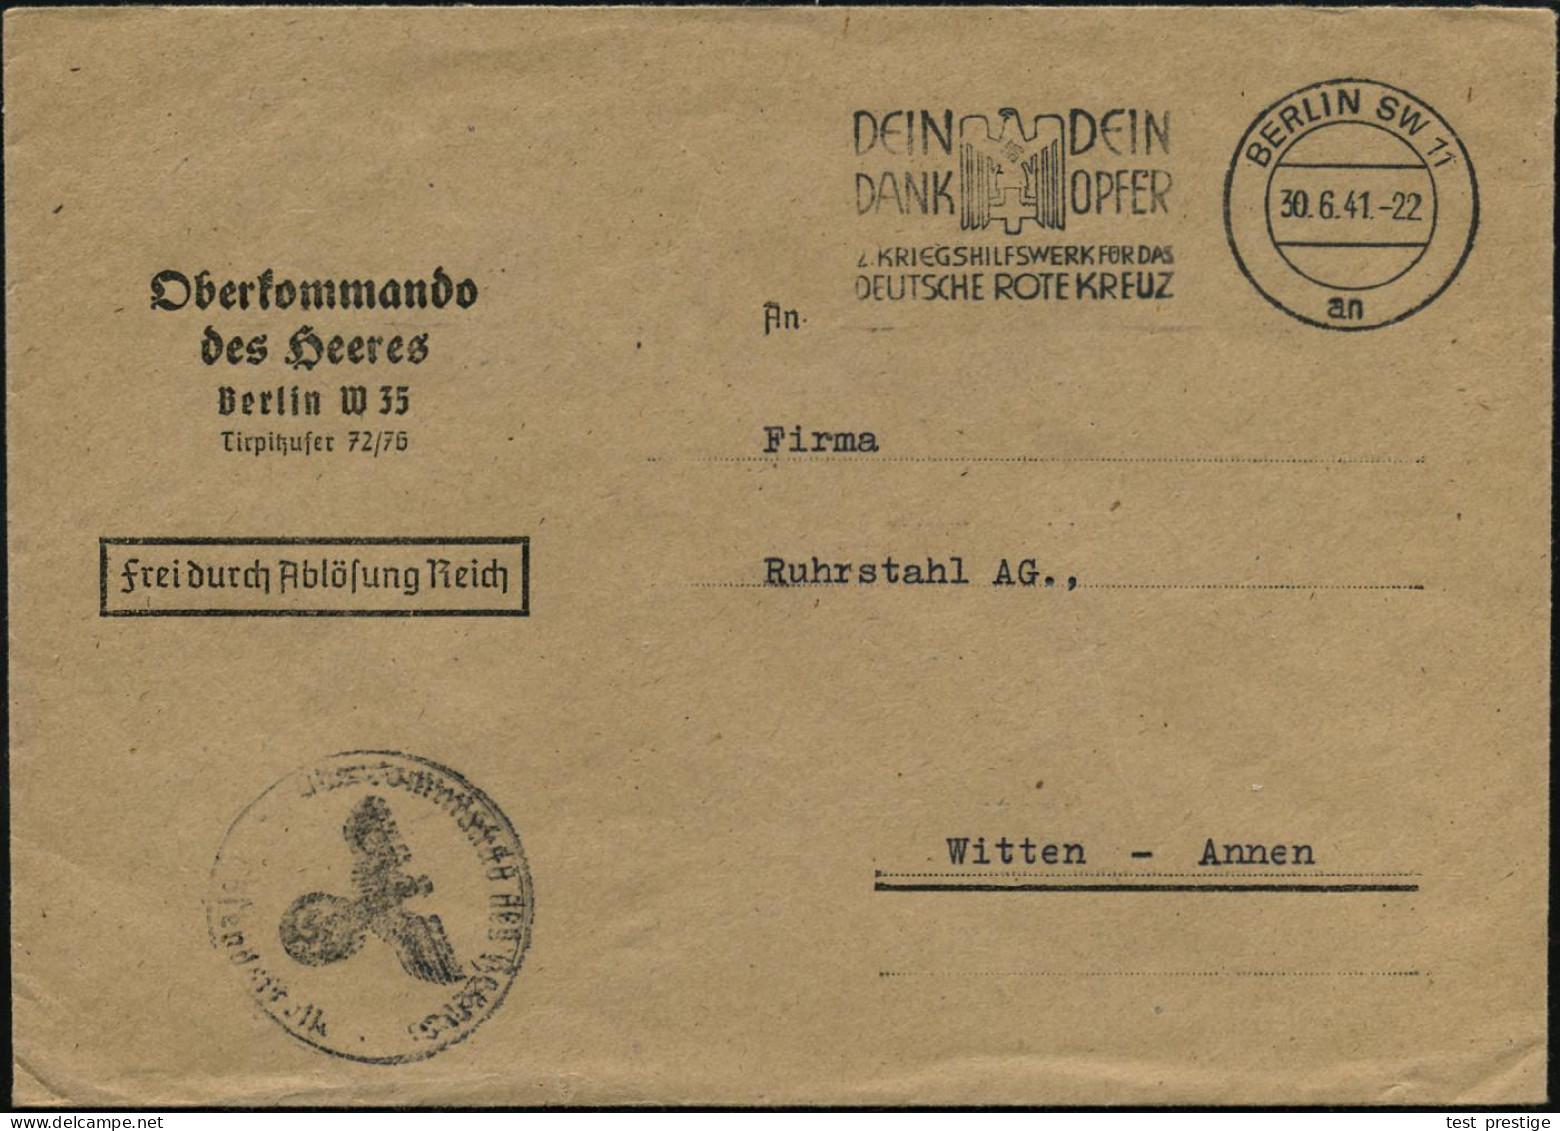 BERLIN SW11/ An/ ..2.KRIEGSWHW FÜR DAS/ DEUTSCHE ROTE KREUZ 1941 (30.6.) MWSt (RK-Logo) Dienst-Bf.: Oberkommando Des  He - WW2